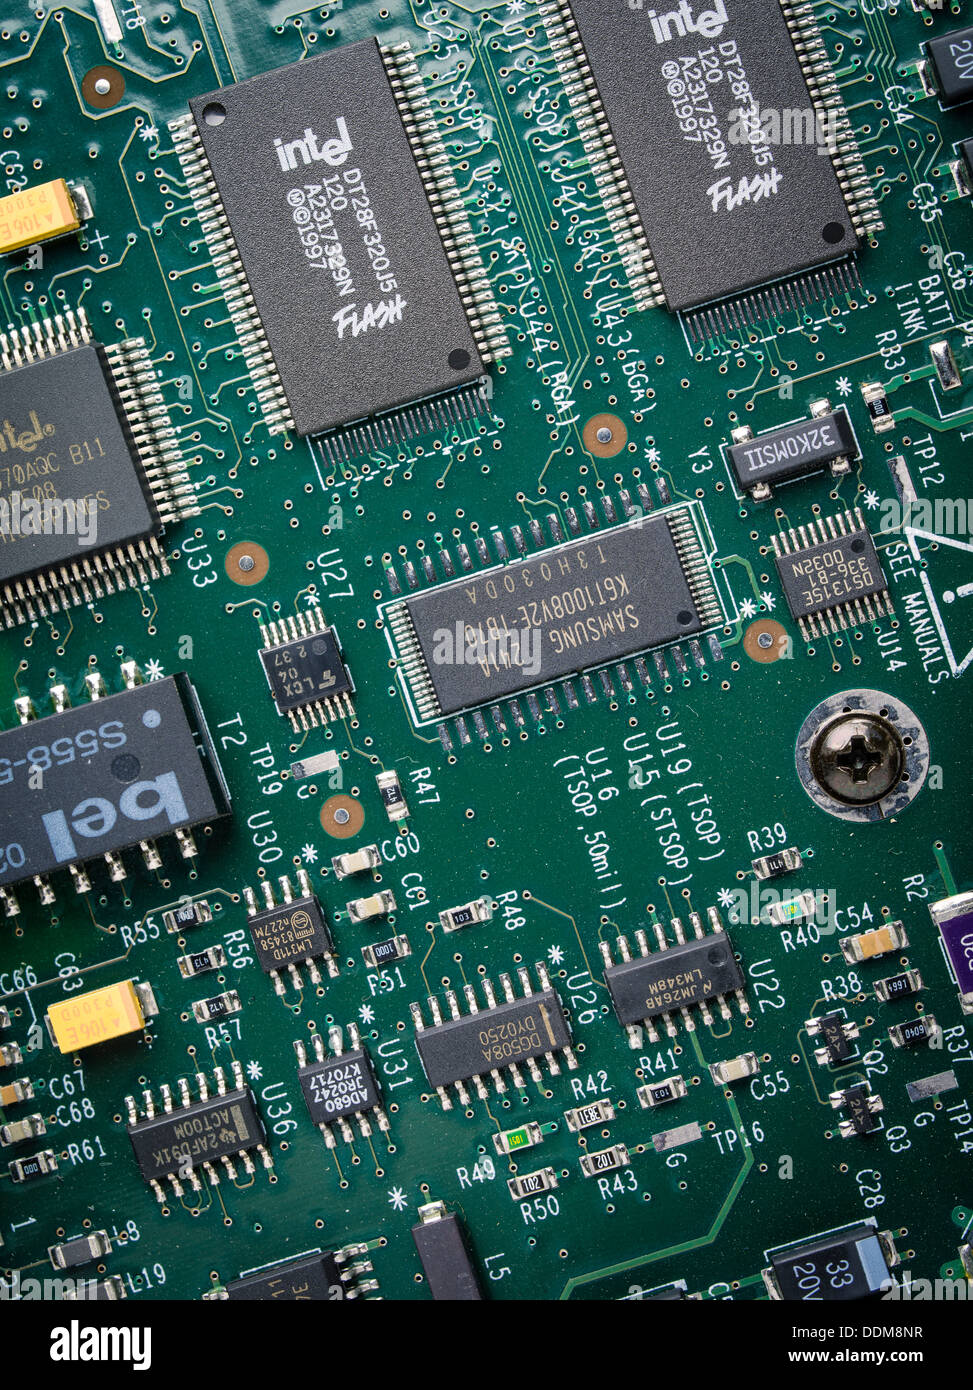 Intel Placa de circuitos de memoria Flash de Microchip Foto de stock